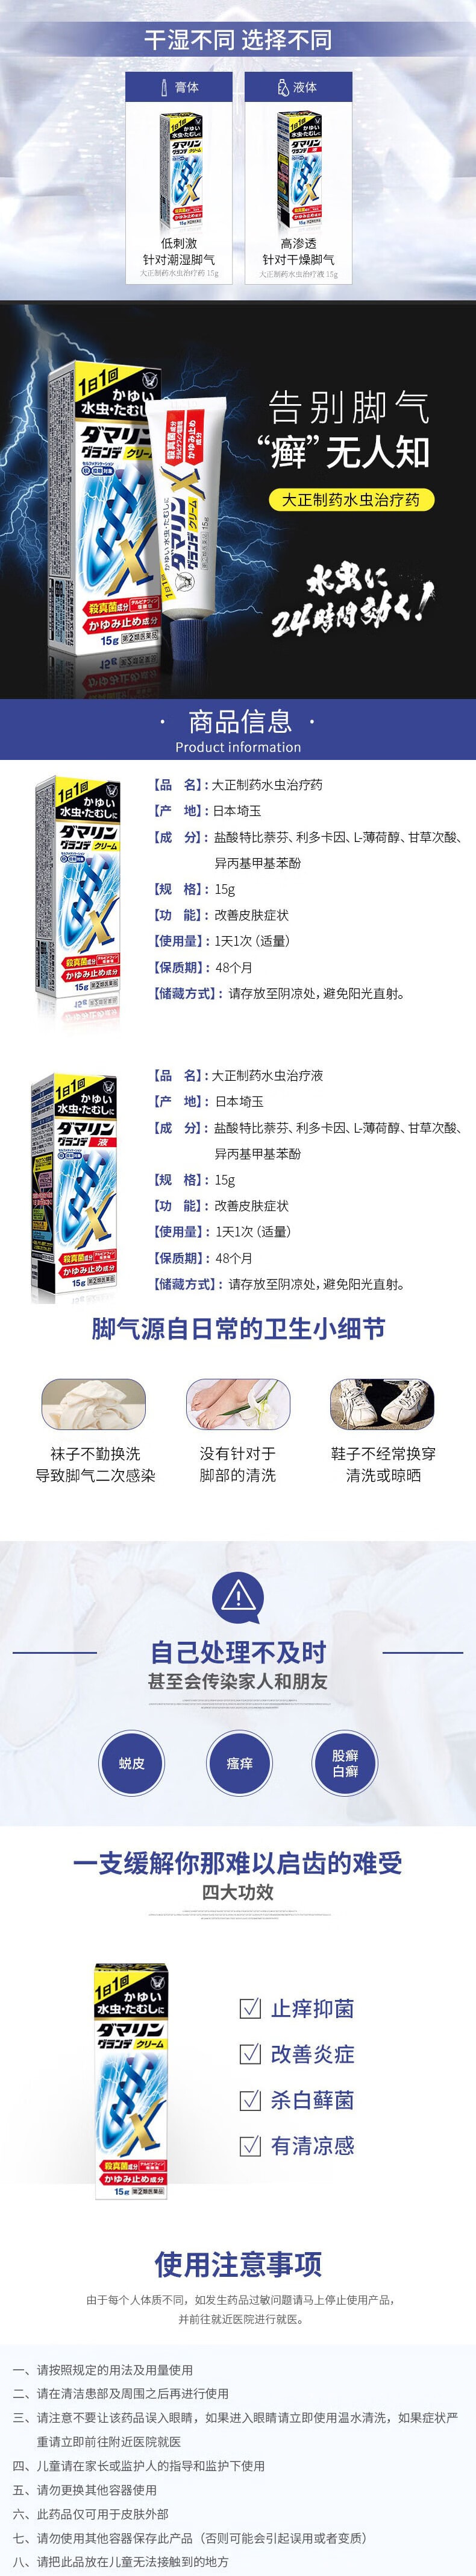 日本 Taisho Pharmaceutical 大正製藥 腳氣水蟲軟膏 殺菌止癢改善腳氣不適症狀 15g